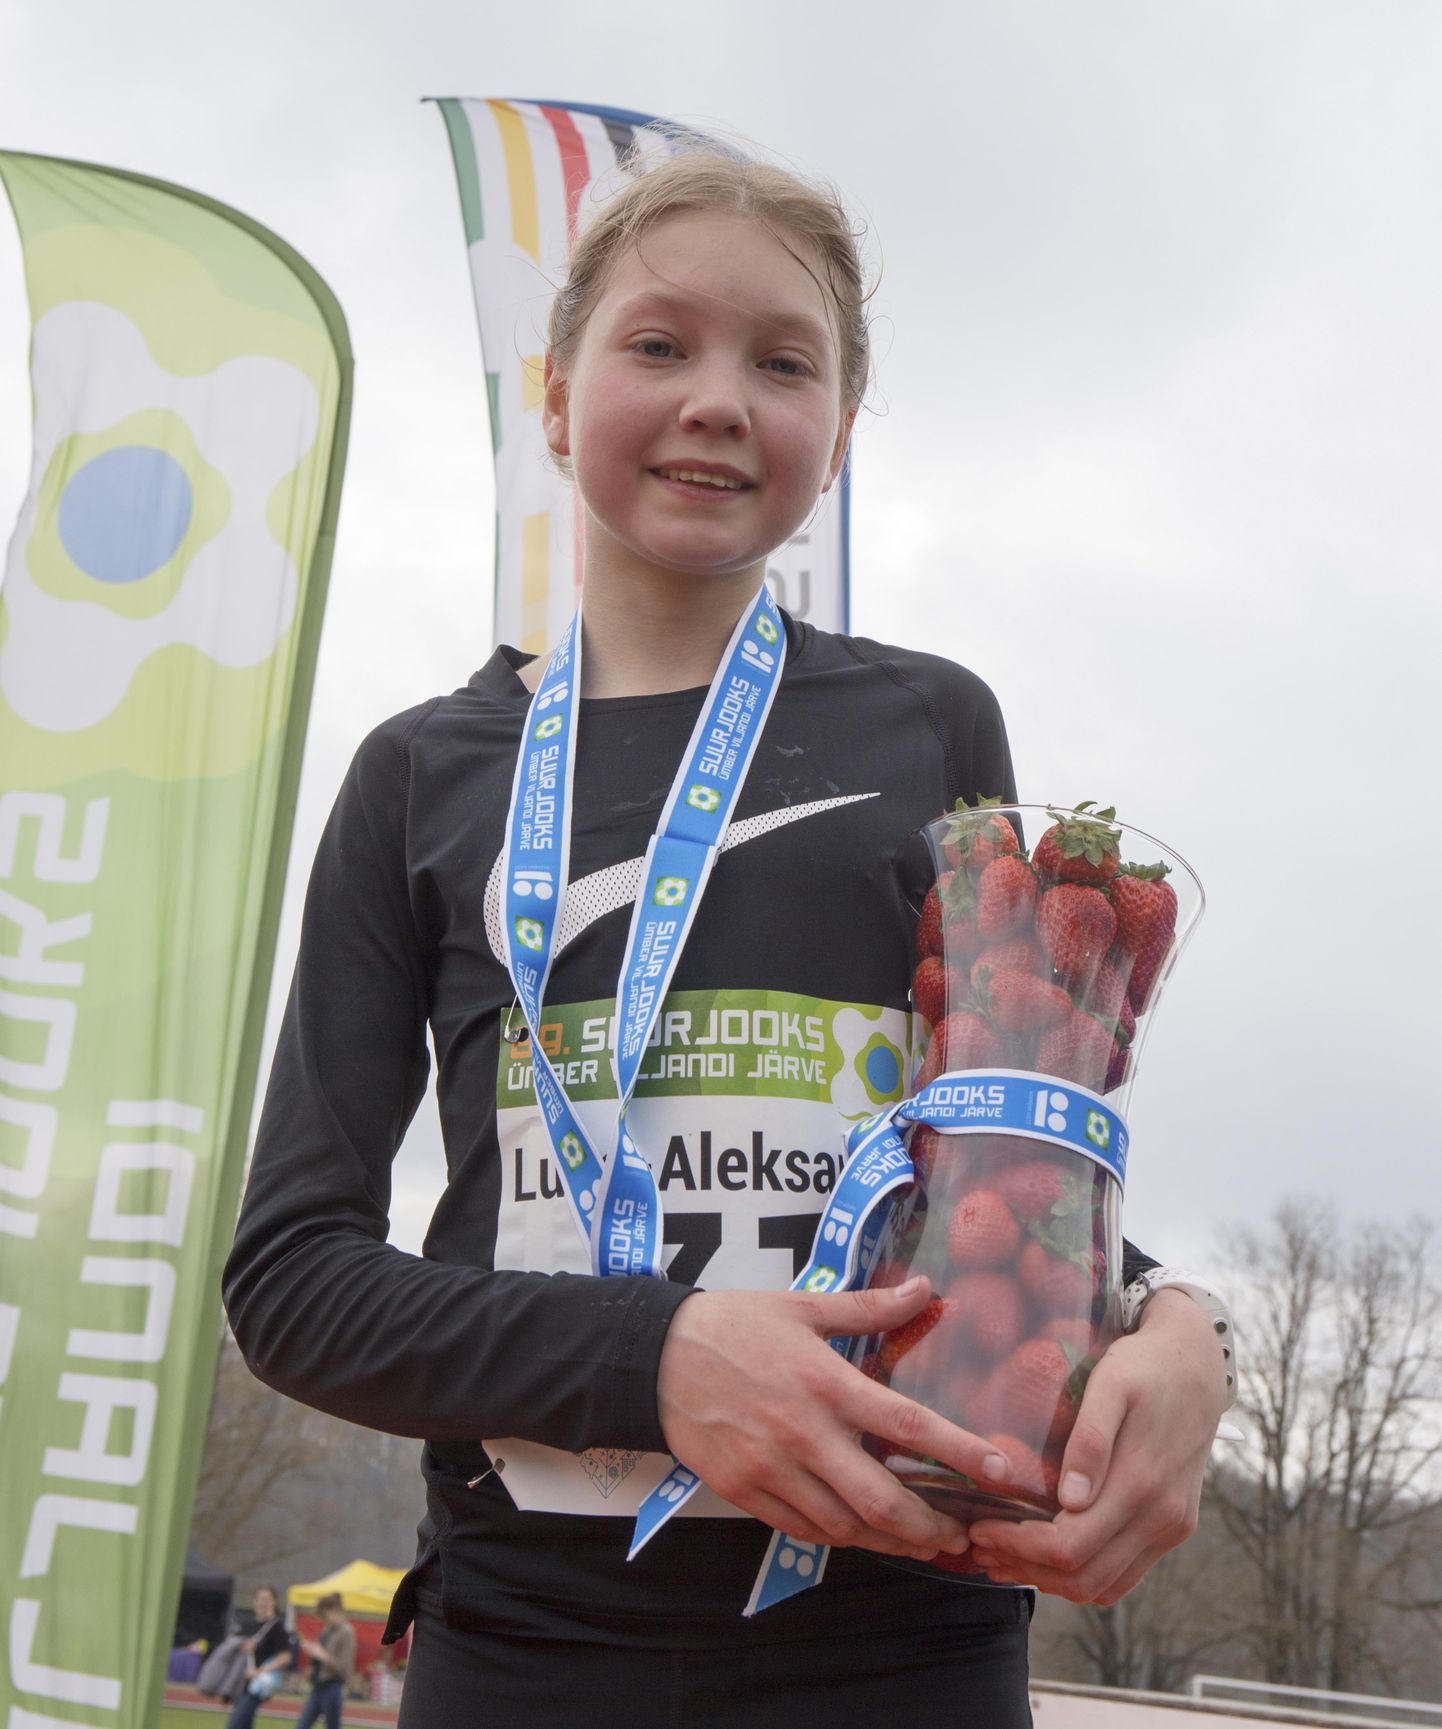 Tänavuse järvejooksu suurima üllatuse pakkus 13-aastane Luna-Aleksandra Lagoda, tulles naiste seas võitjaks.